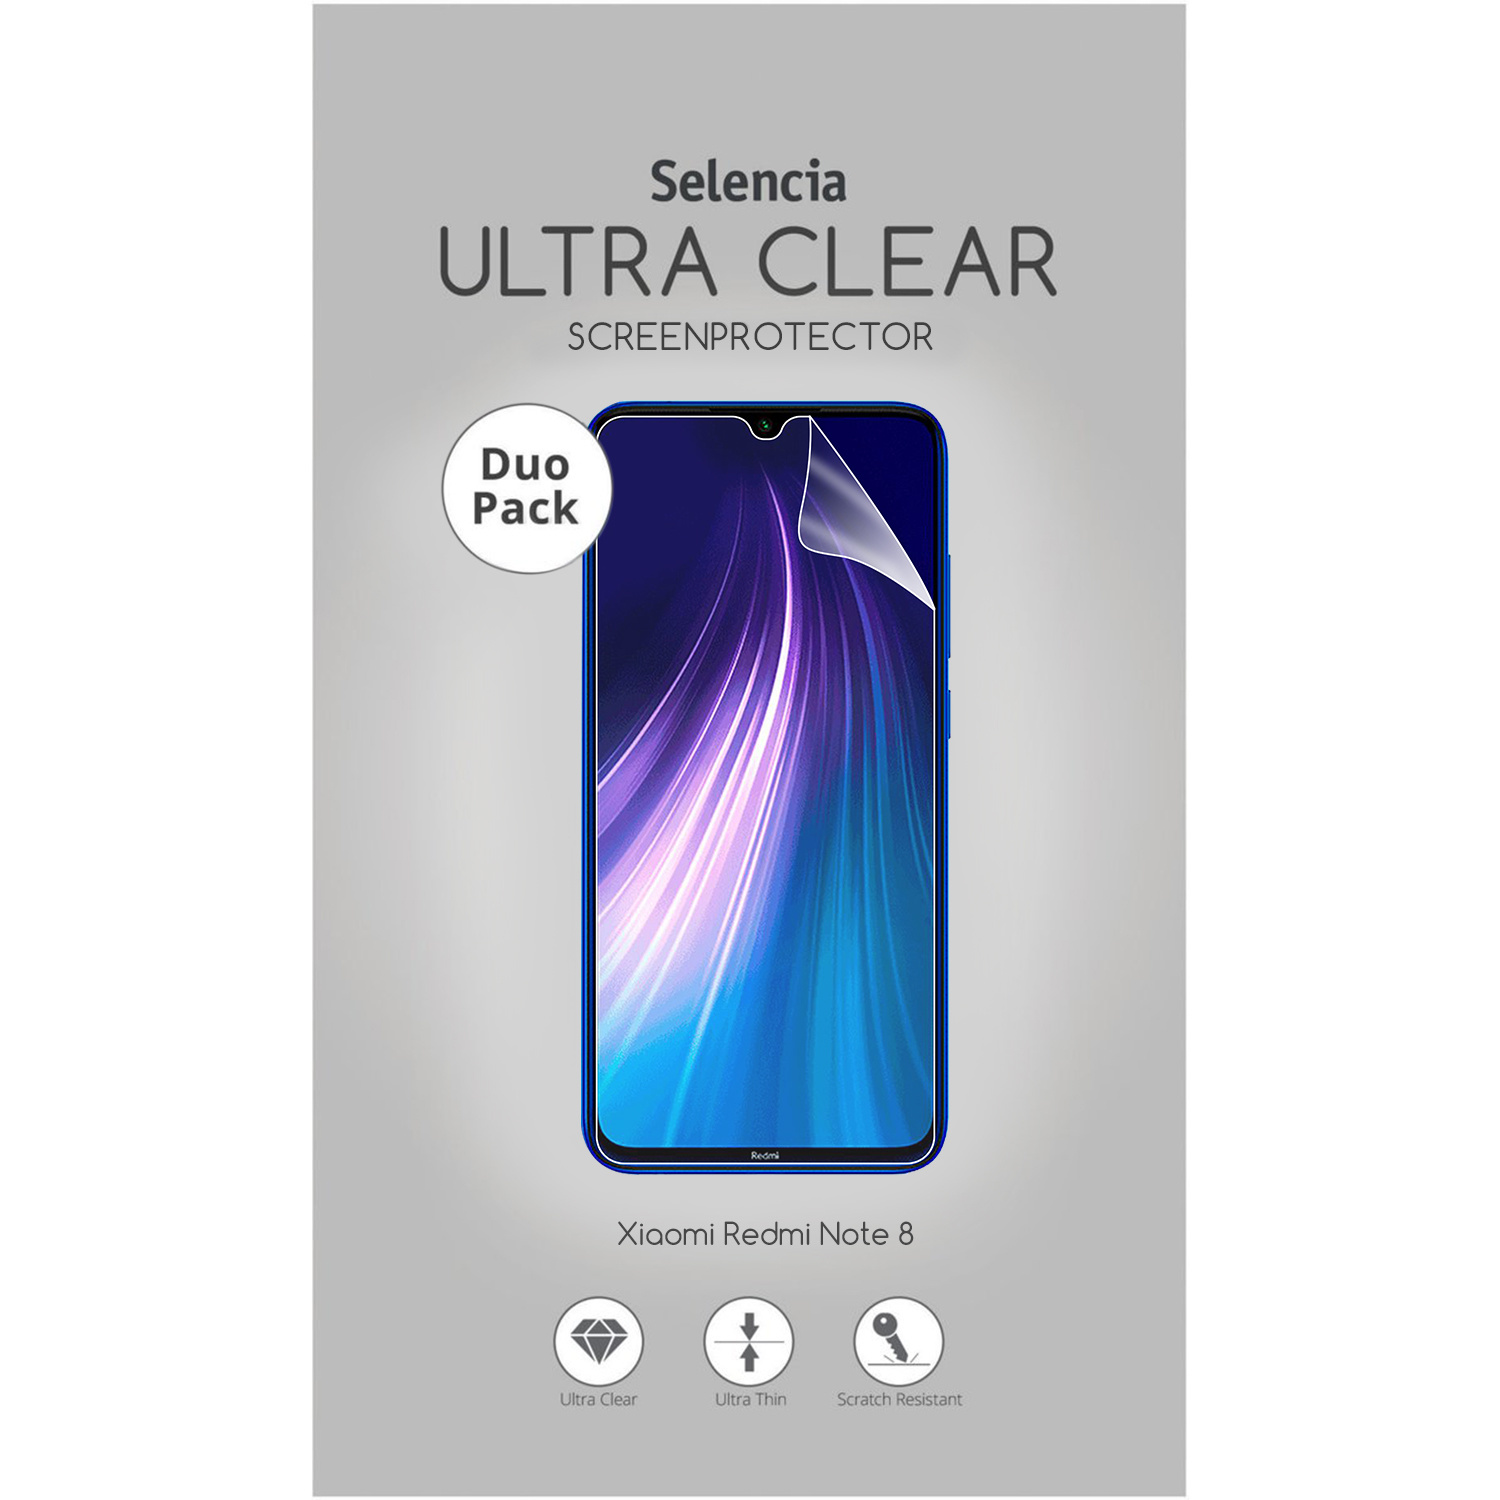 Selencia Pack Ultra Clear Screenprotector Xiaomi Redmi Note 8